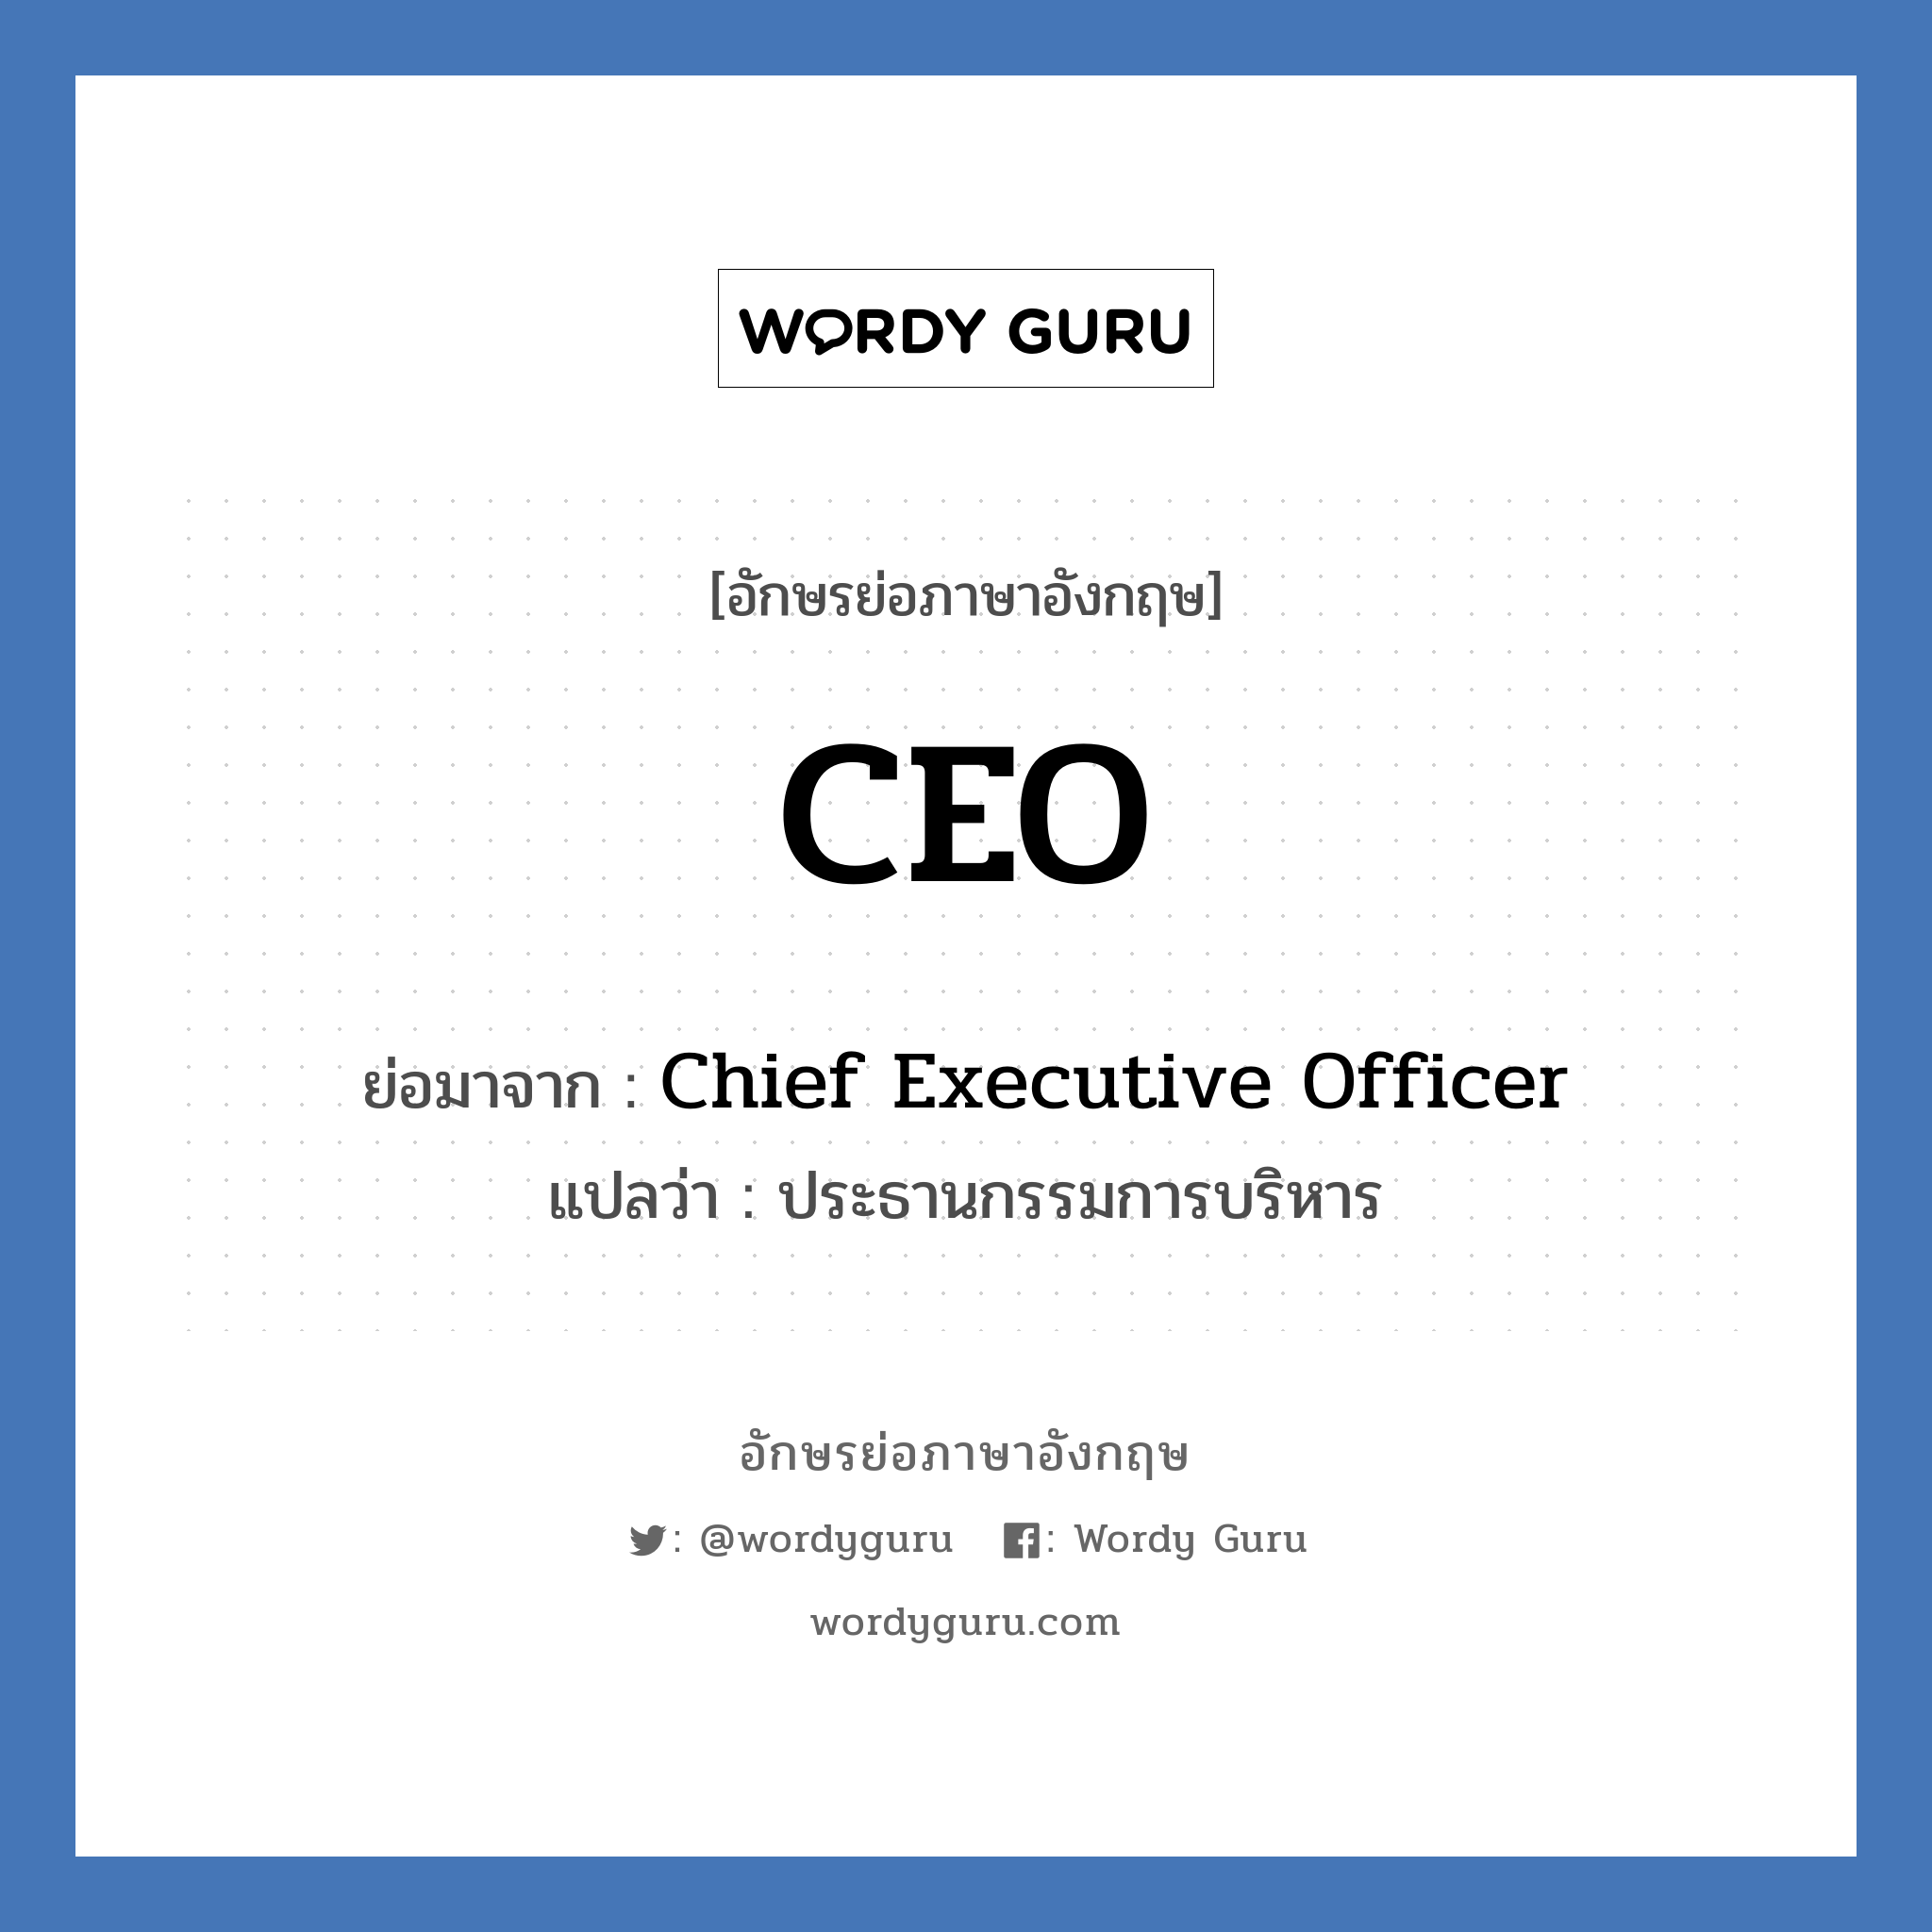 CEO ย่อมาจาก? แปลว่า?, อักษรย่อภาษาอังกฤษ CEO ย่อมาจาก Chief Executive Officer แปลว่า ประธานกรรมการบริหาร หมวด ตำแหน่งงาน หมวด ตำแหน่งงาน